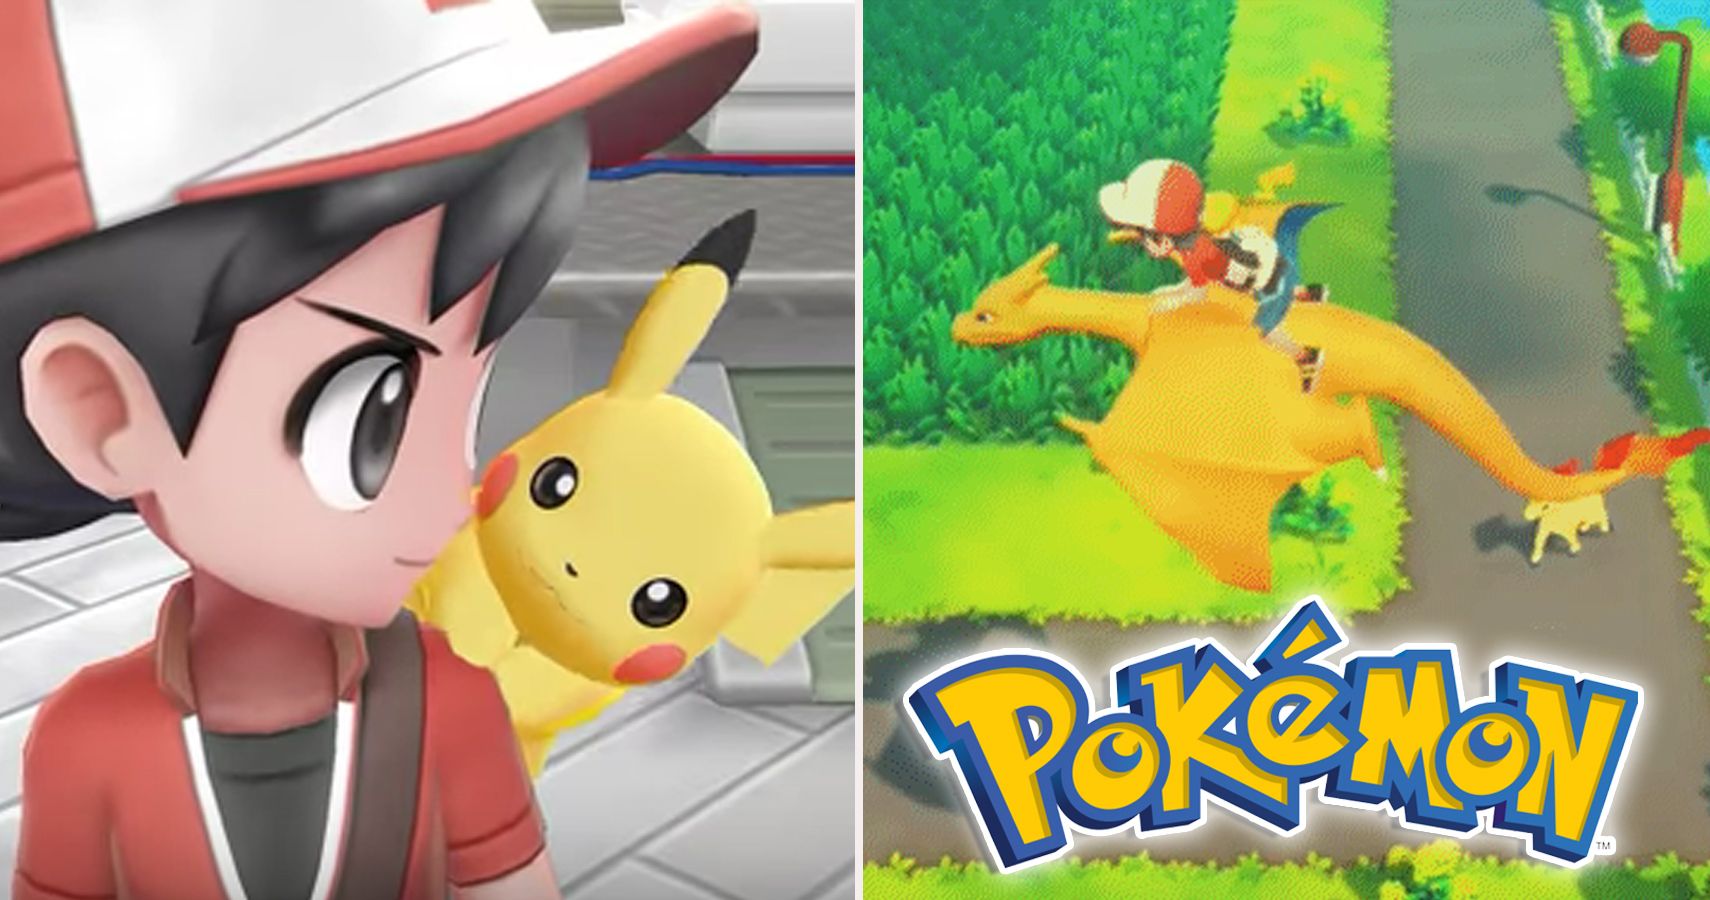 Pokémon Yellow Intro Remake 